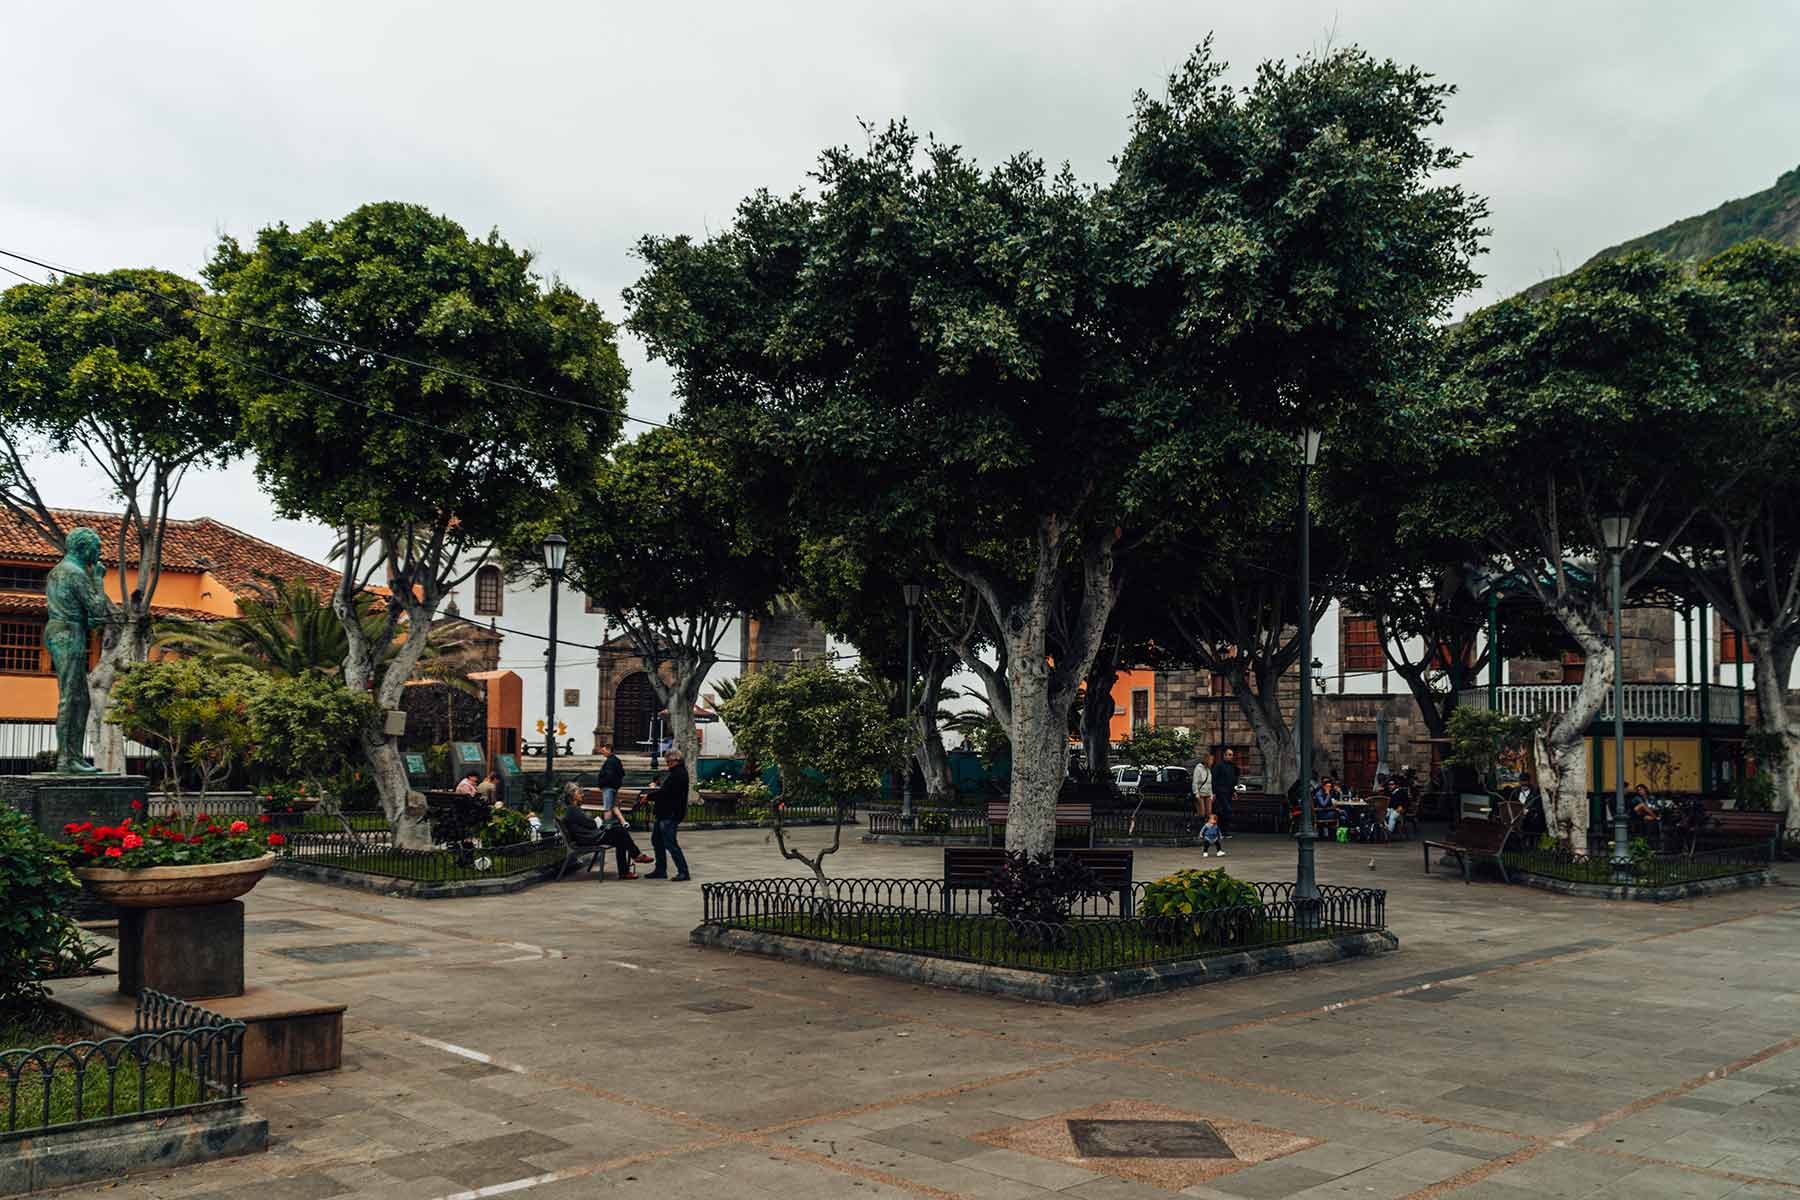 The main square in Garachico - Plaza de la Libertad